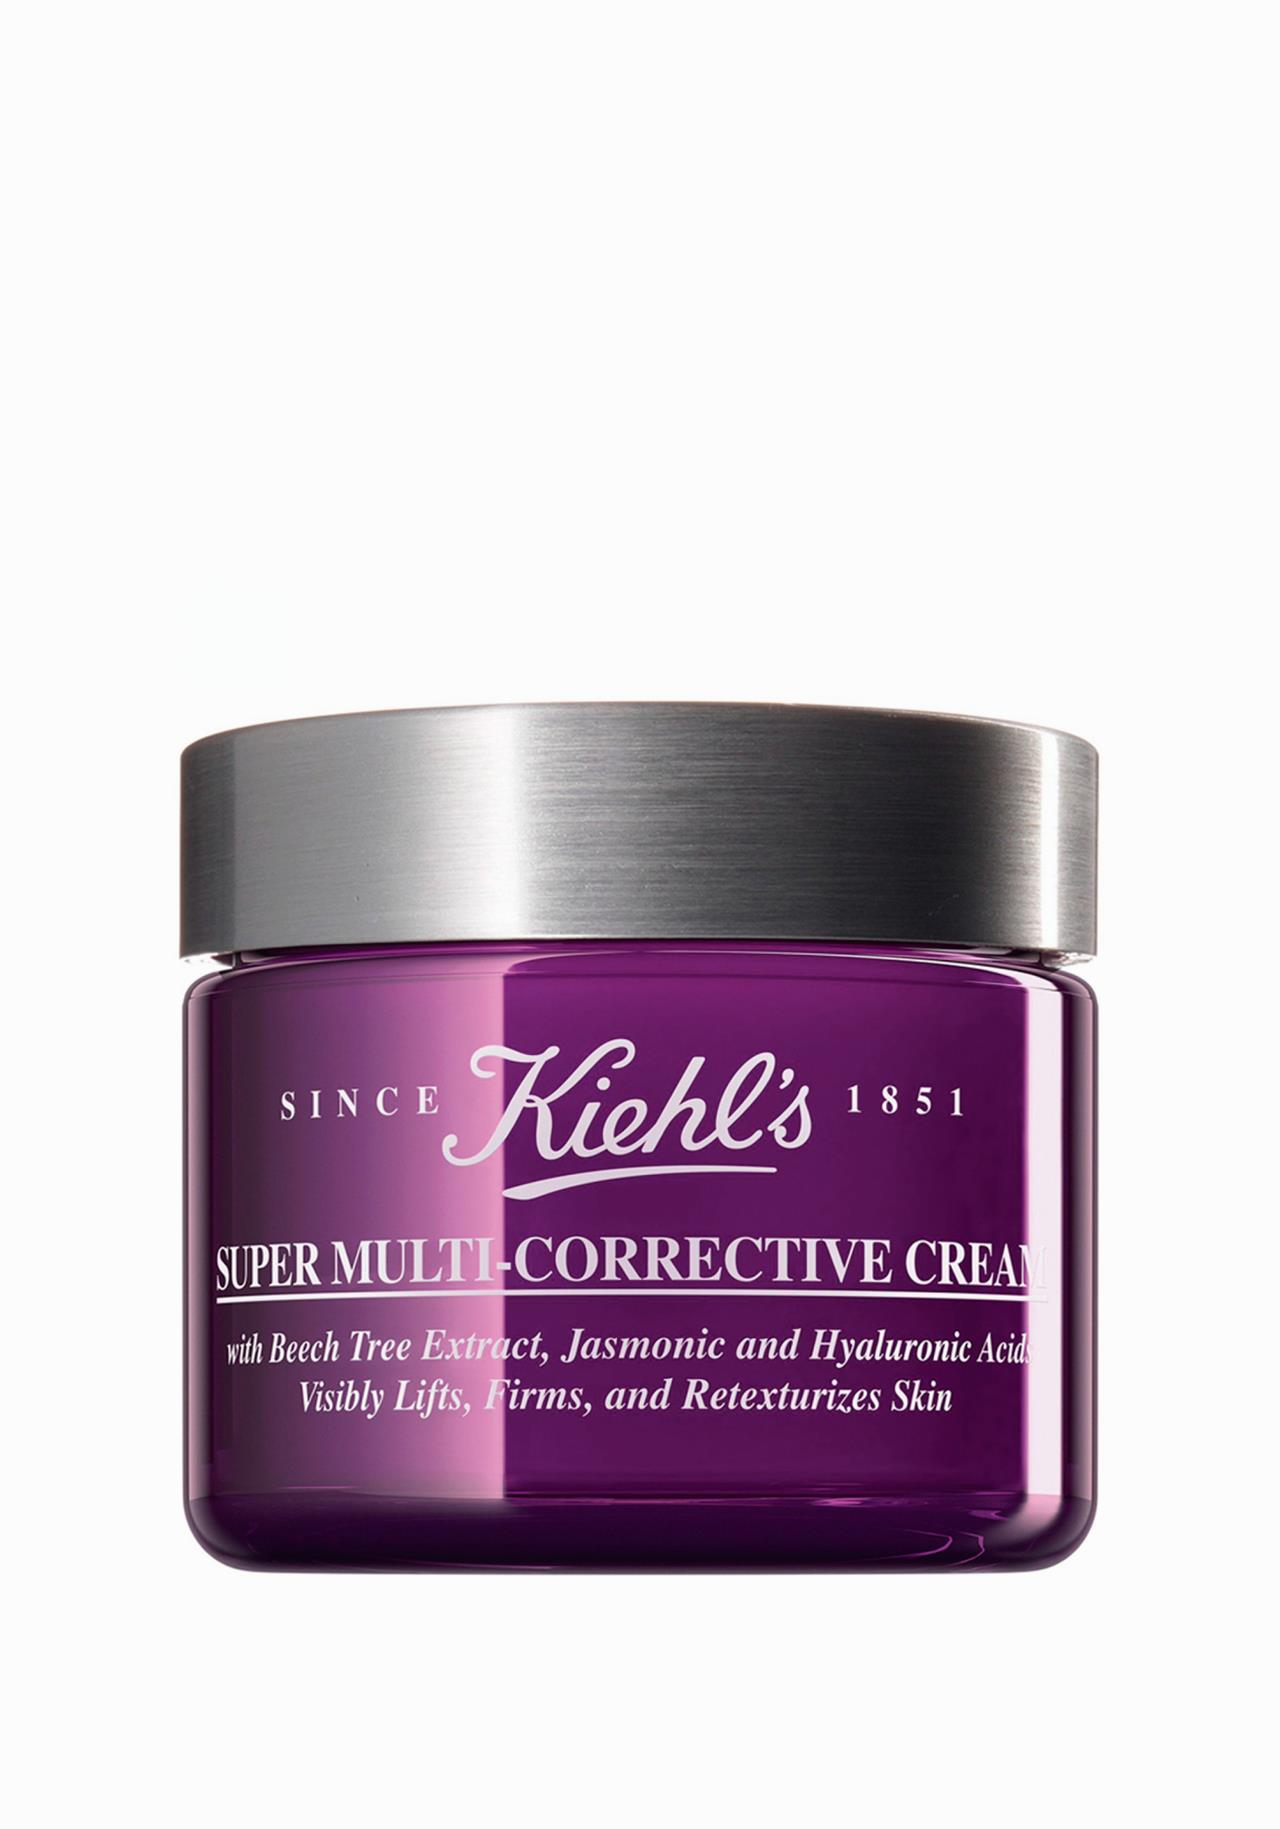 Crema  antiedad  Super Corrective Cream de Kiehls Las mejores cremas para mujeres de 50 años y más